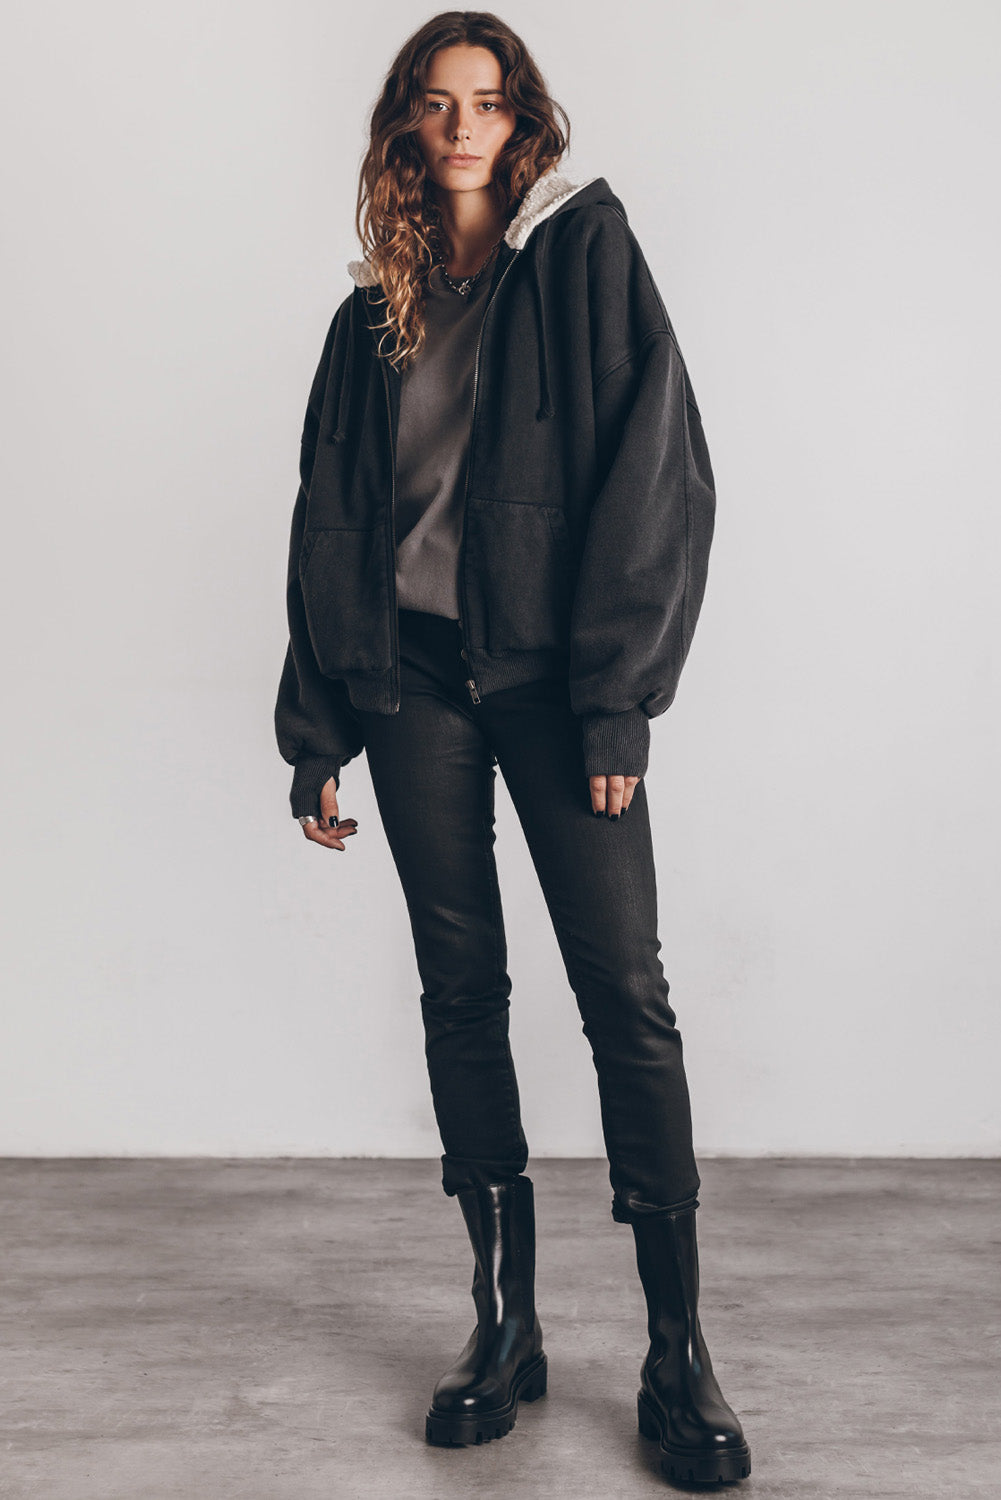 Veste zippée à capuche noire en sherpa avec manches passe-pouces